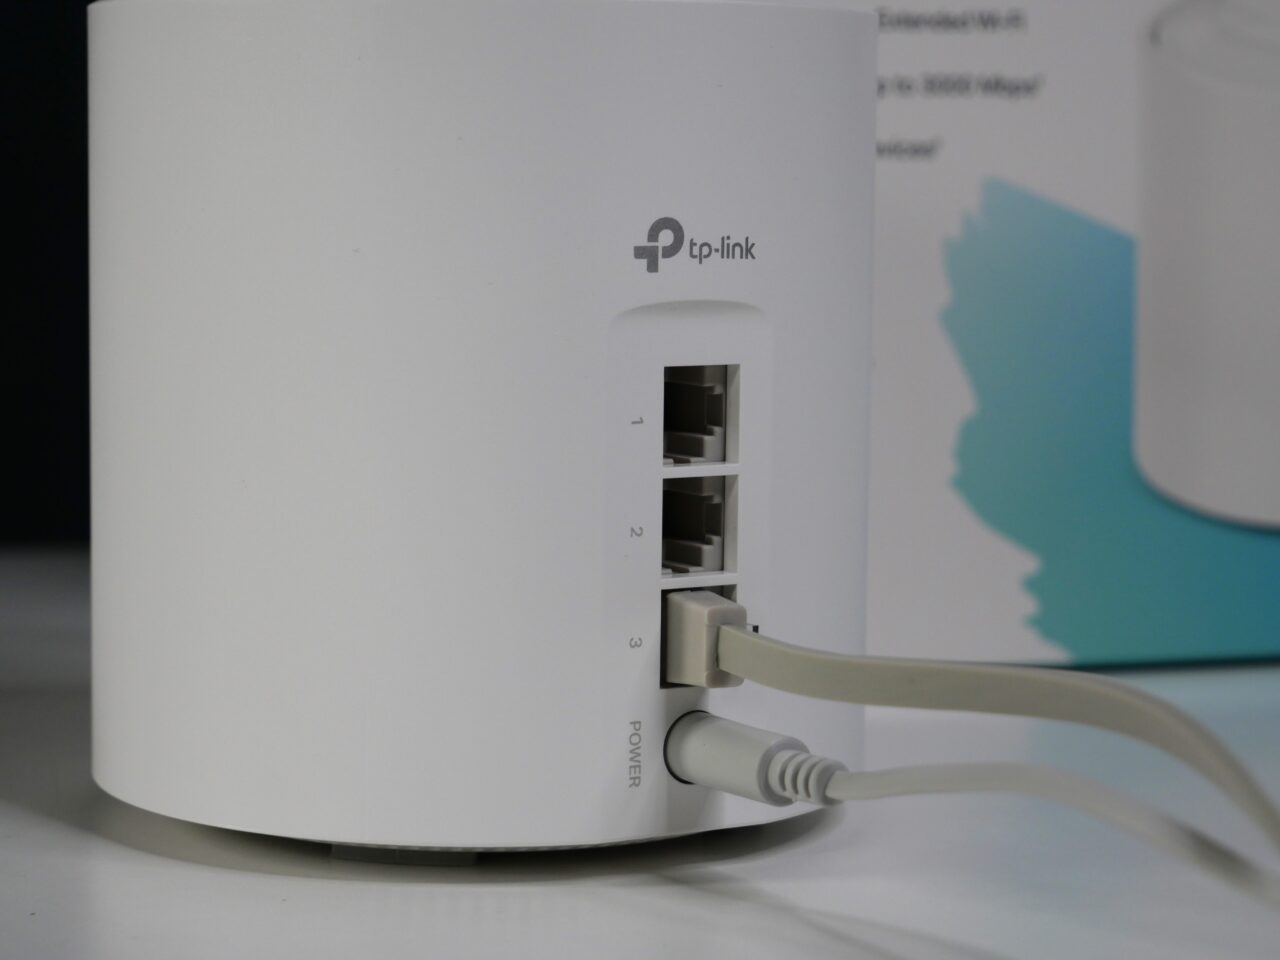 Biały router TP-Link z podłączonym kablem Ethernet w przybliżonym widoku z lekkim rozmyciem tła.